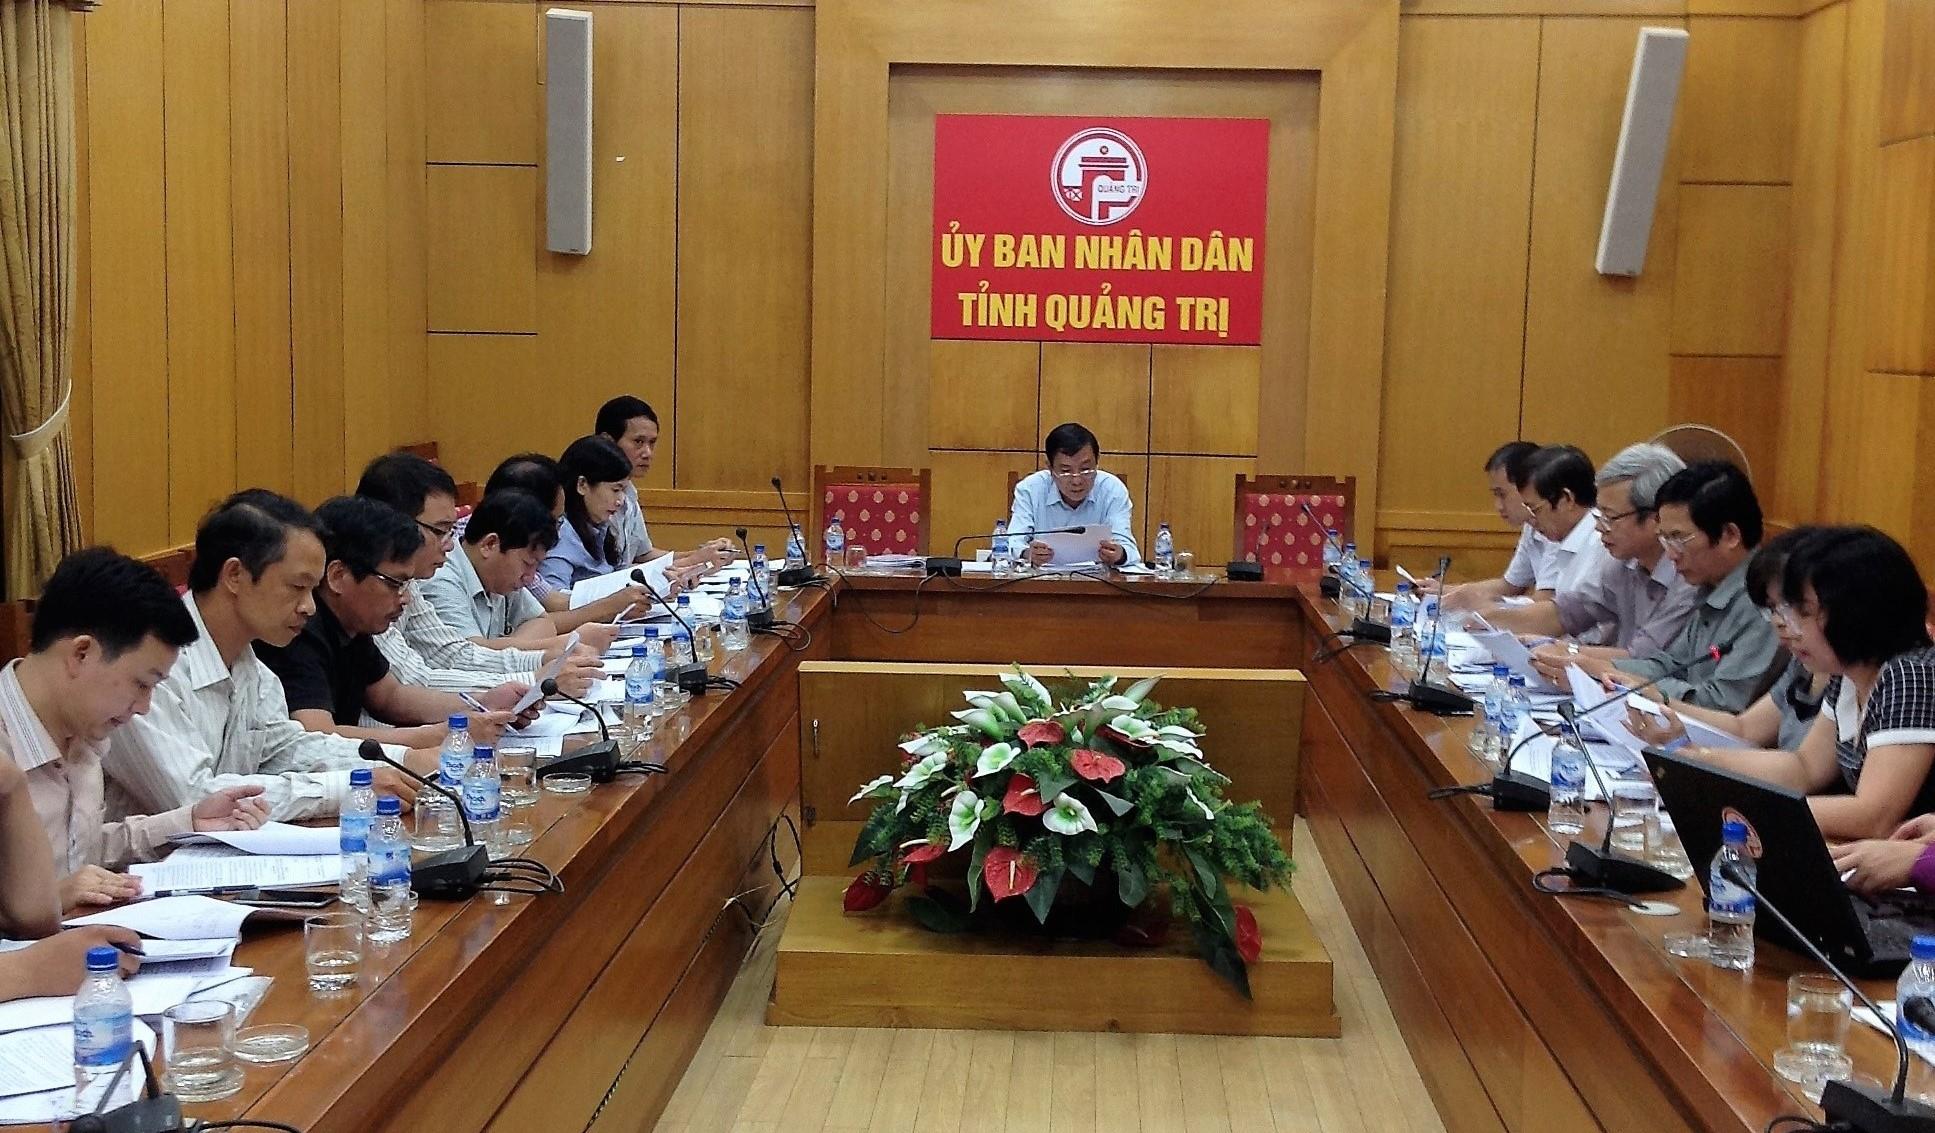 Hội nghị Ban chỉ đạo Công nghệ thông tin tỉnh Quảng Trị  